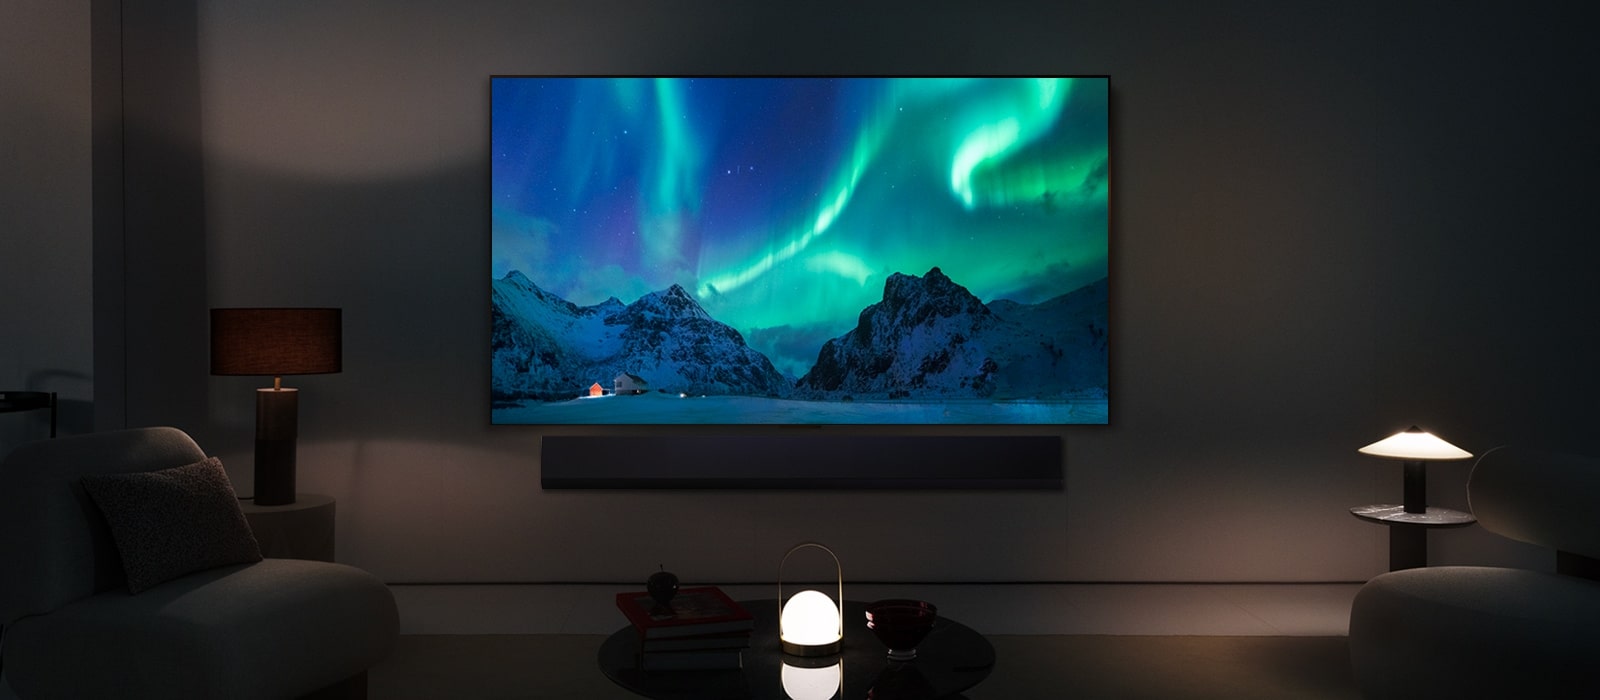 LG OLED TV i LG Soundbar u modernom stambenom prostoru noću. Slika polarne svjetlosti na zaslonu prikazuje se s idealnom razinom osvjetljenja.